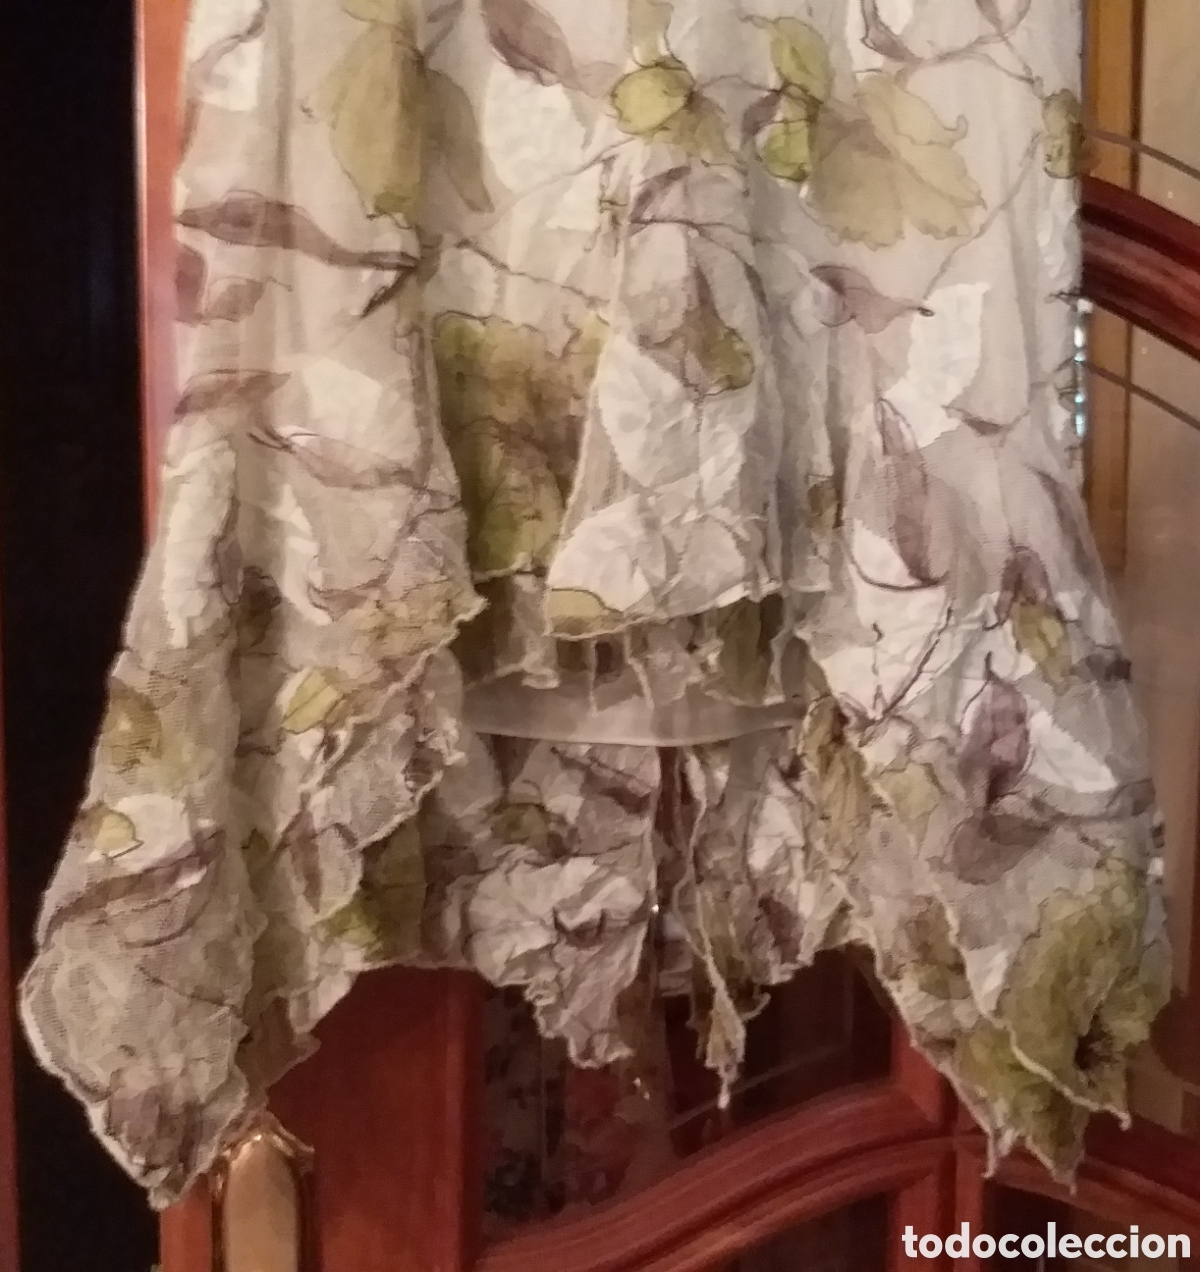 falda con forma tejido elástico - Comprar Ropa Vintage Mujer de Segunda Mano en todocoleccion -